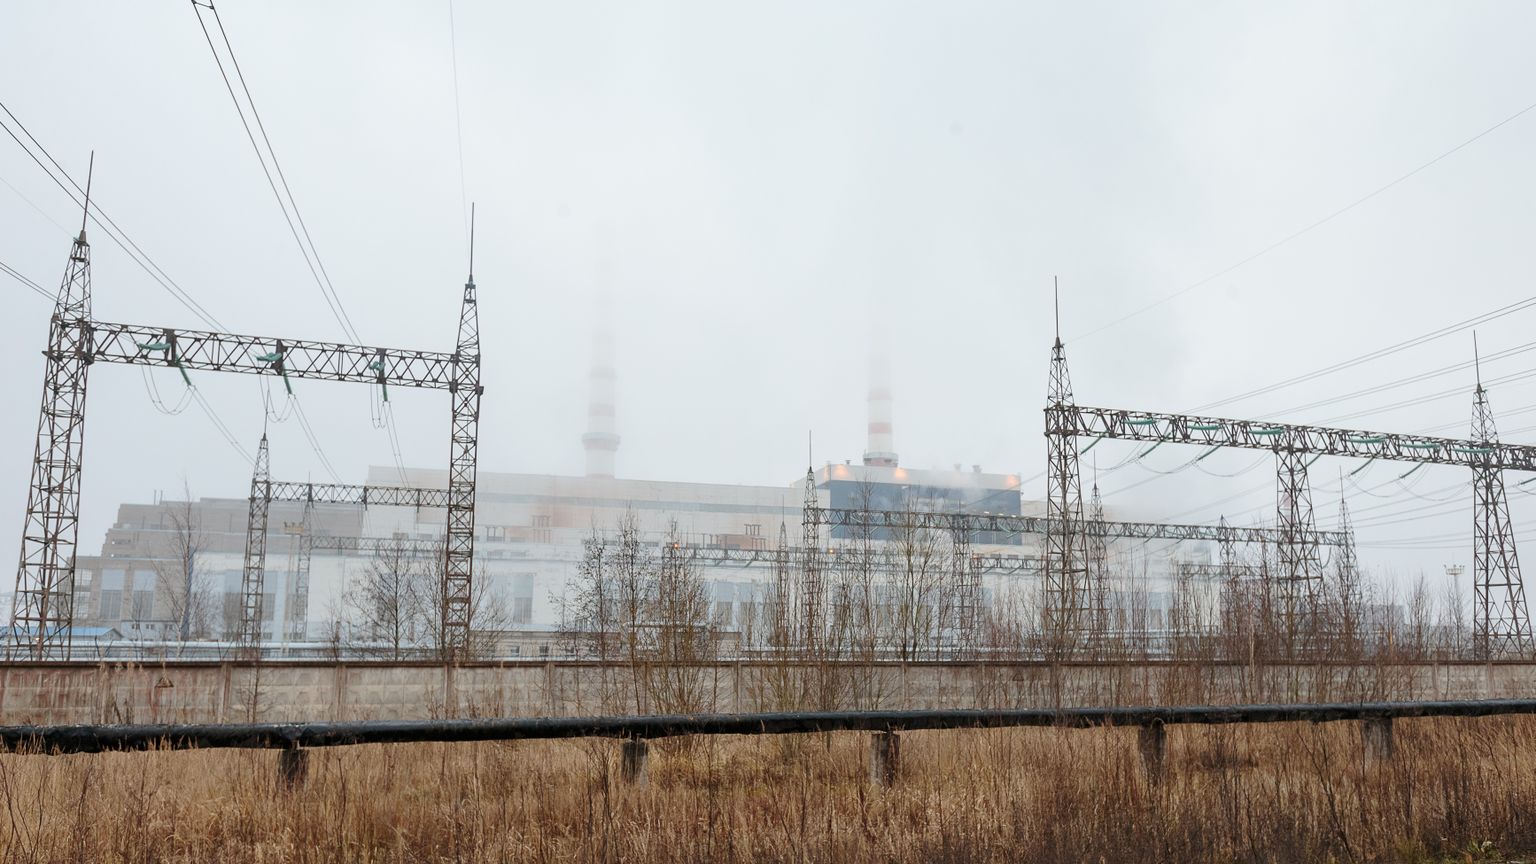 Золоперерабатывающий завод мог бы появиться, в соответствии с нынешним планом, по соседству с Балтийской электростанцией.